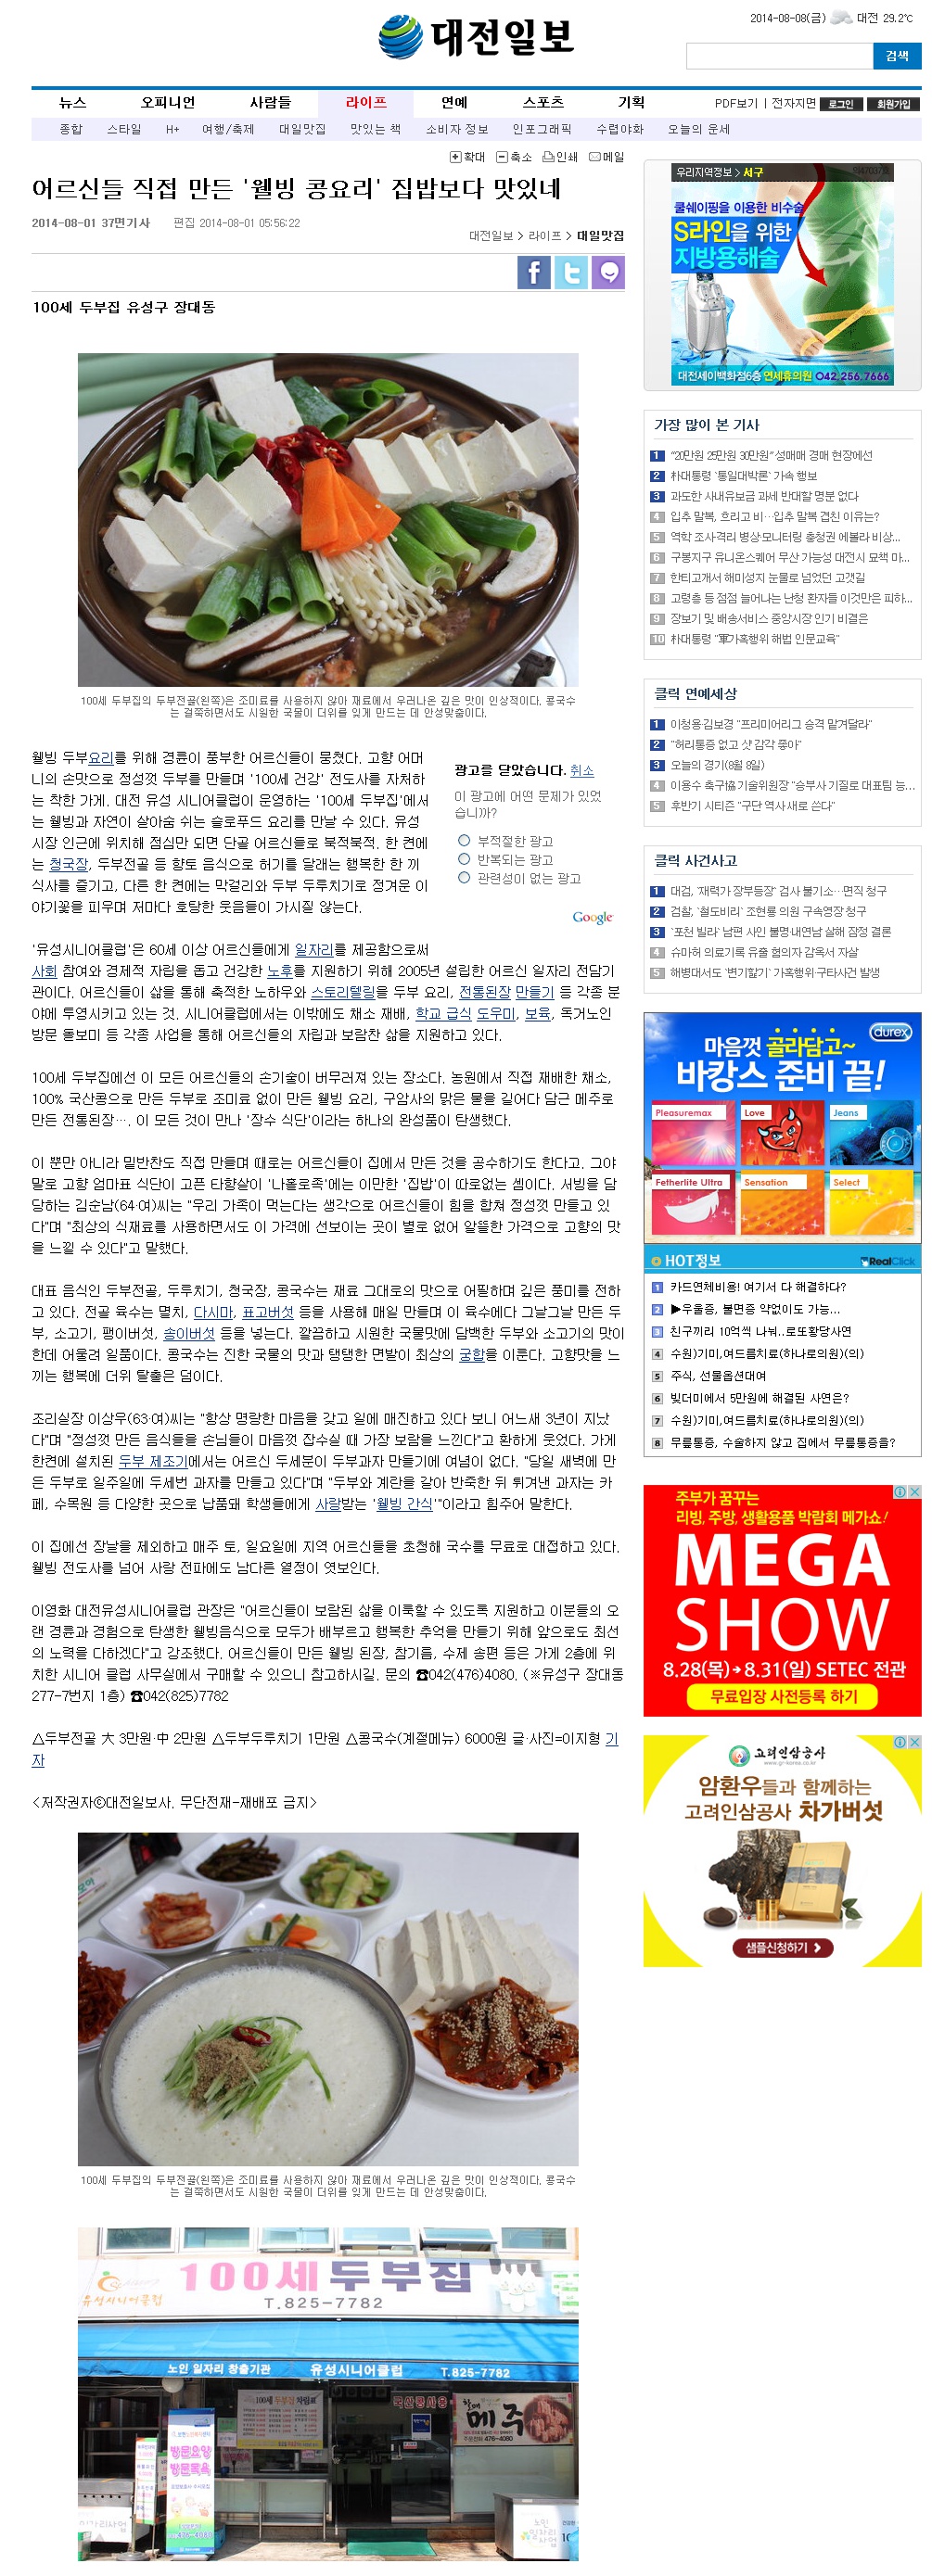 100세두부집(대전일보2014).jpg